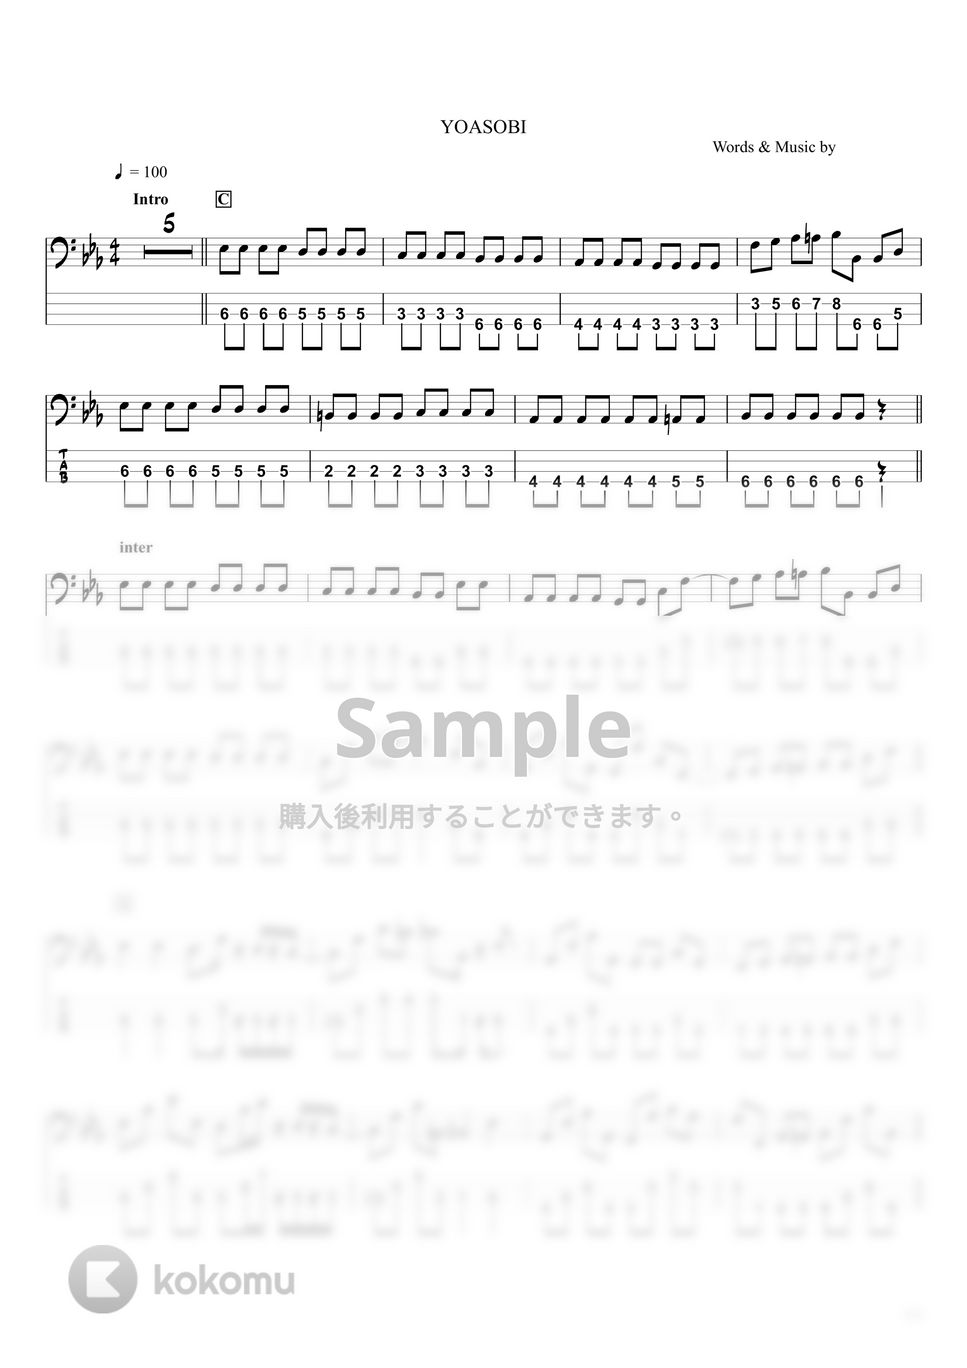 YOASOBI - もう少しだけ (ベースTAB譜☆4弦ベース対応) by swbass